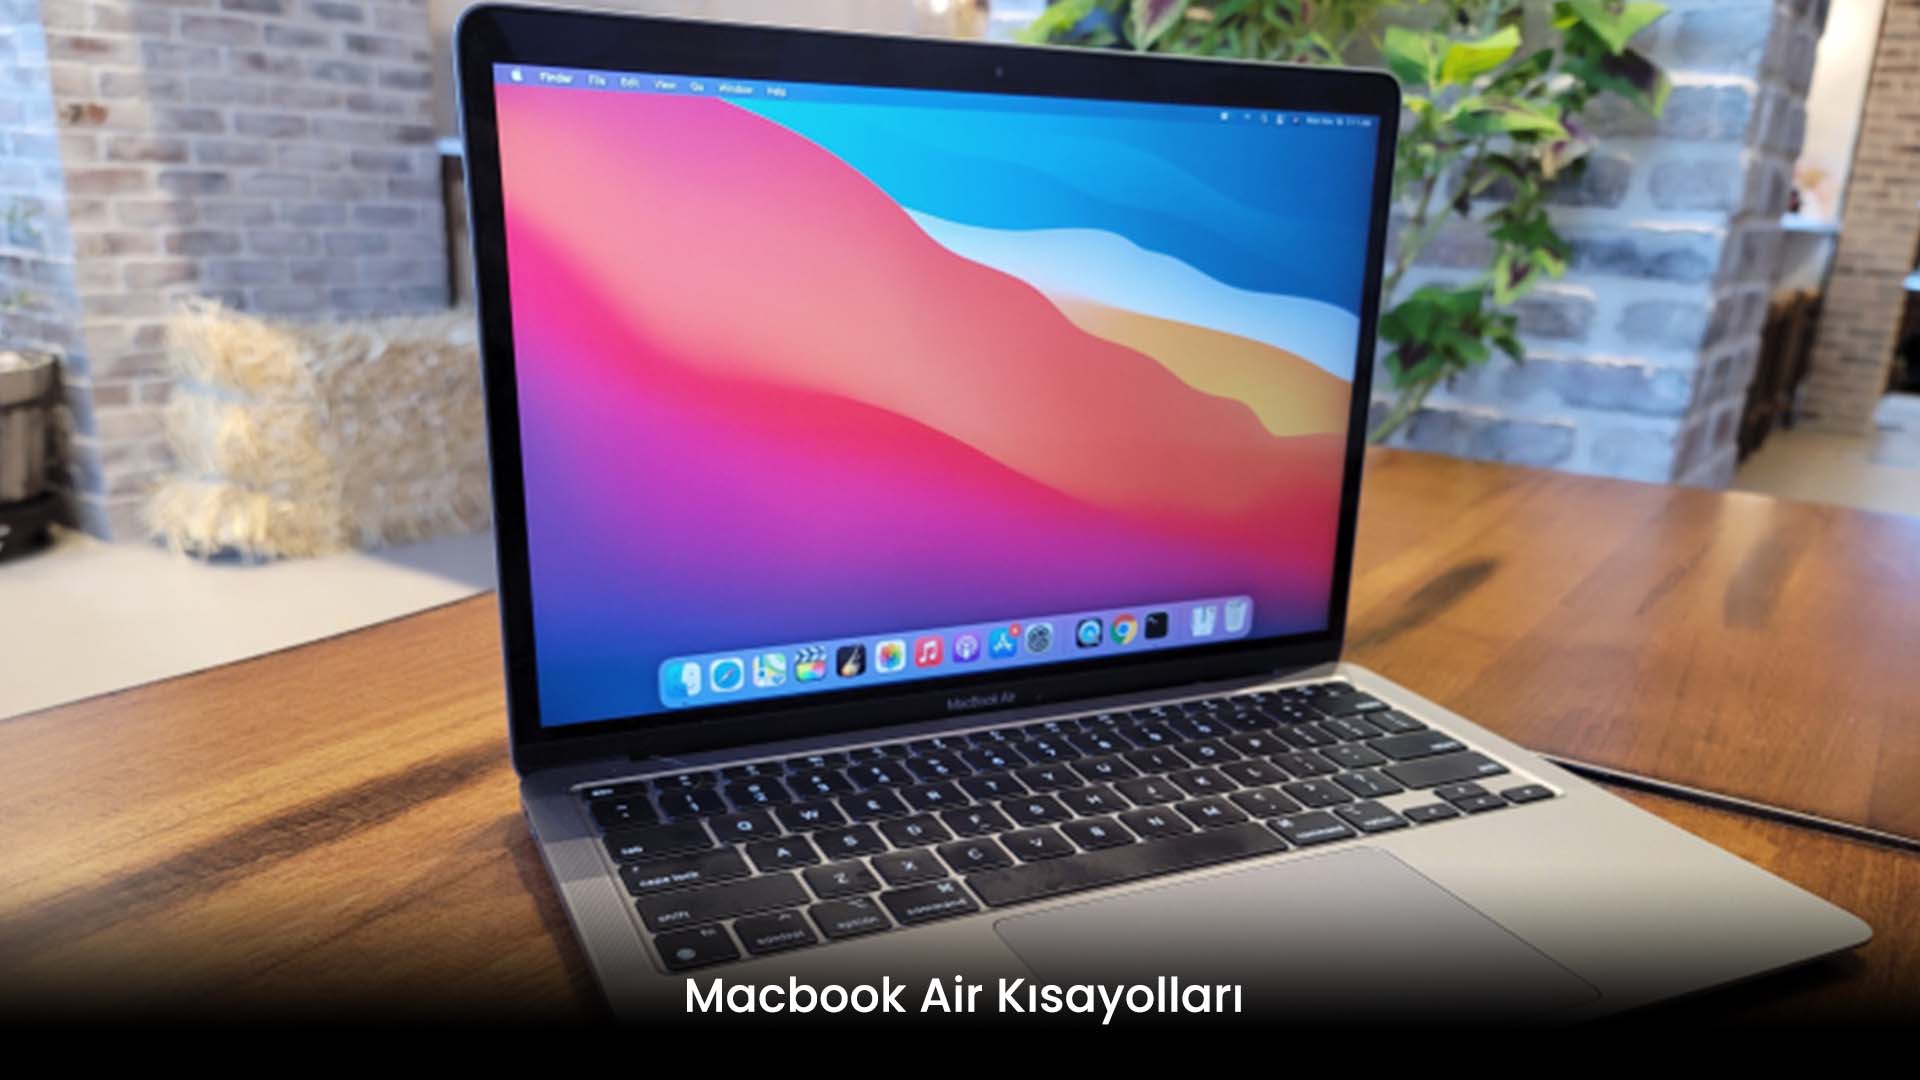 Macbook Air Kısayolları